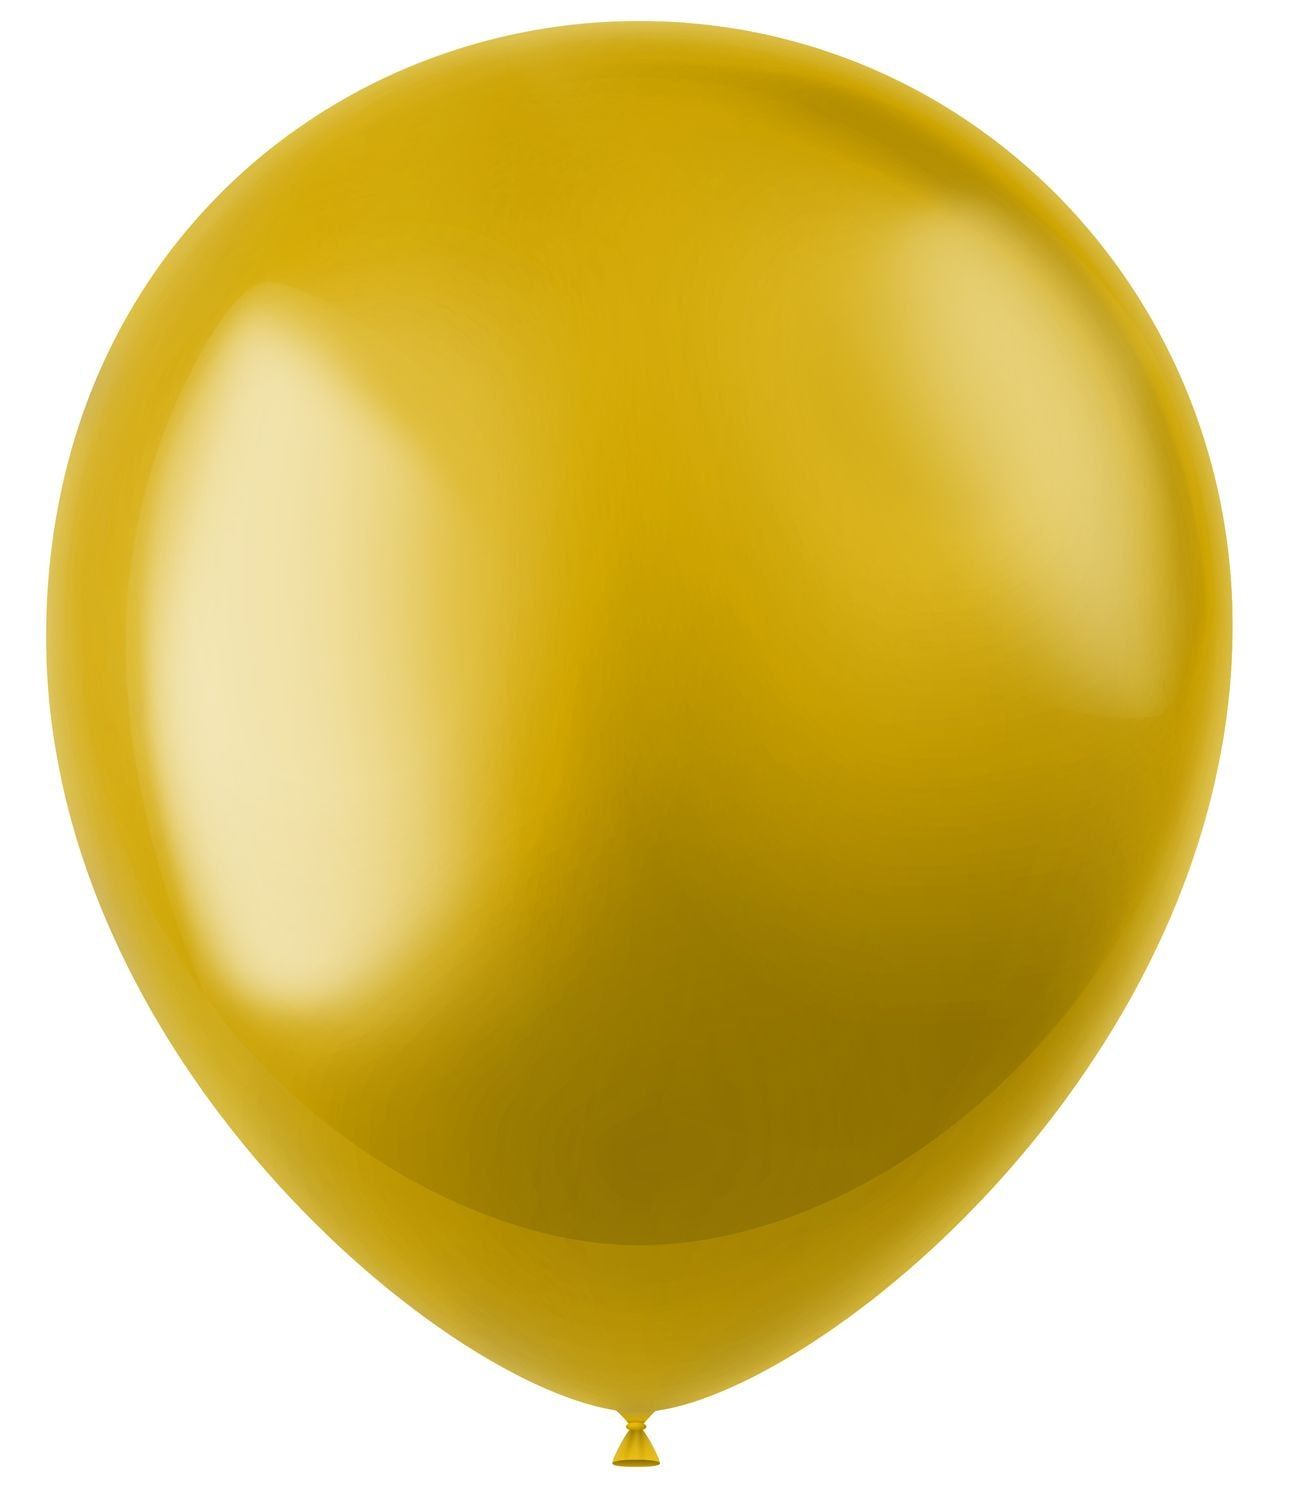 Stardust gouden metallic ballonnen 50 stuks